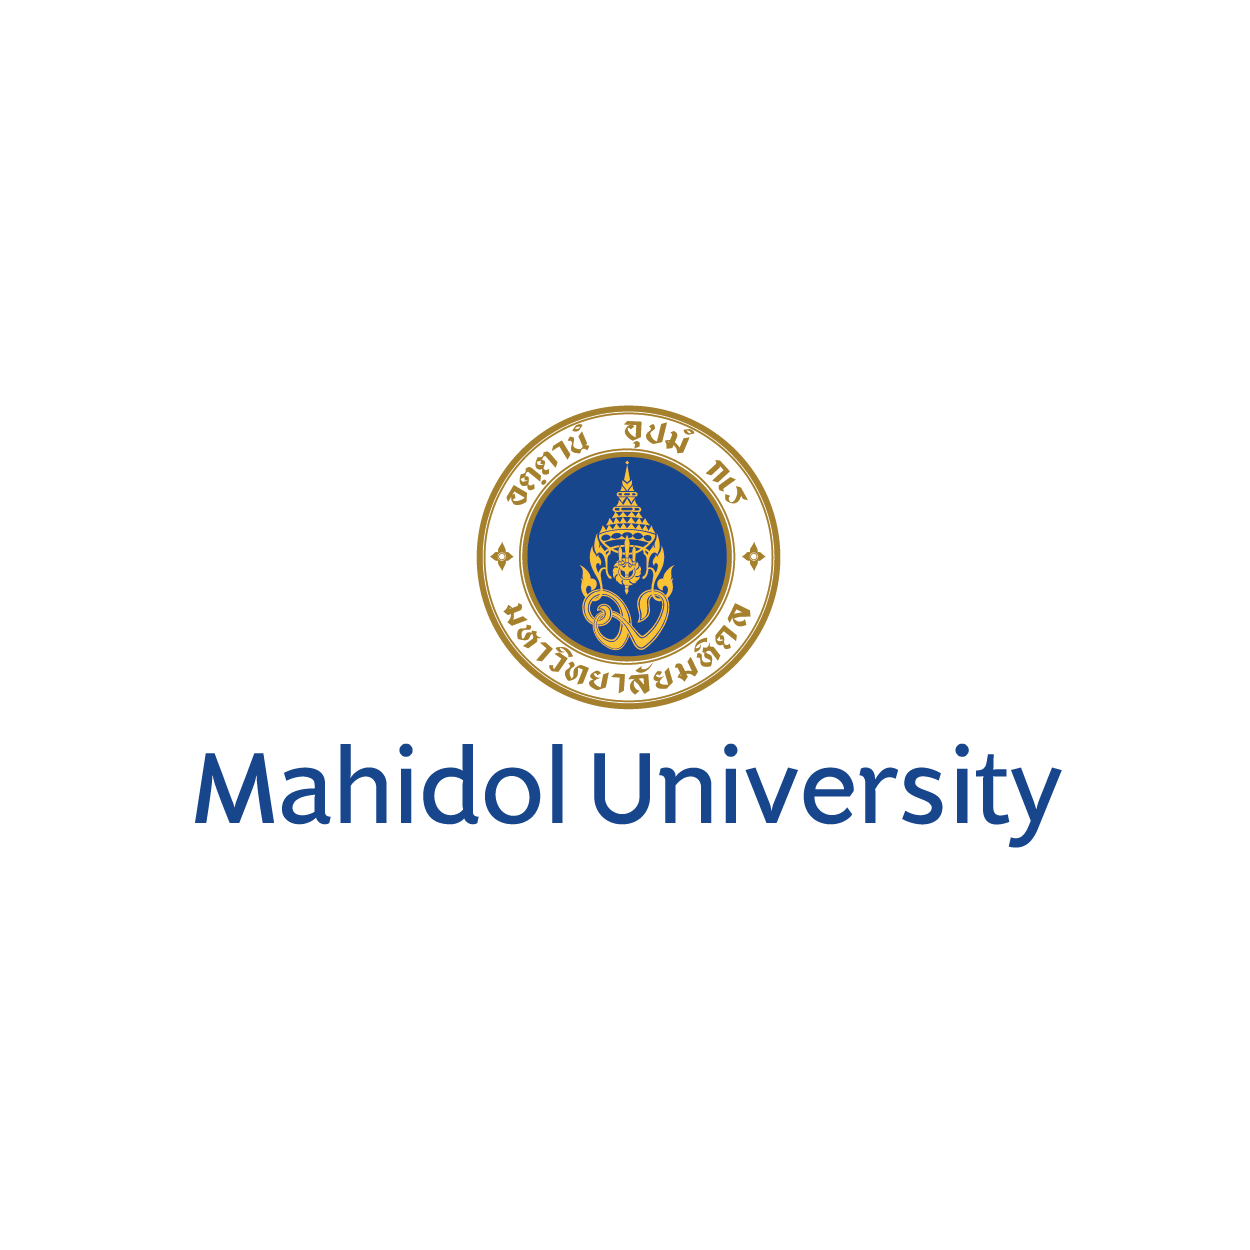 mahidol university